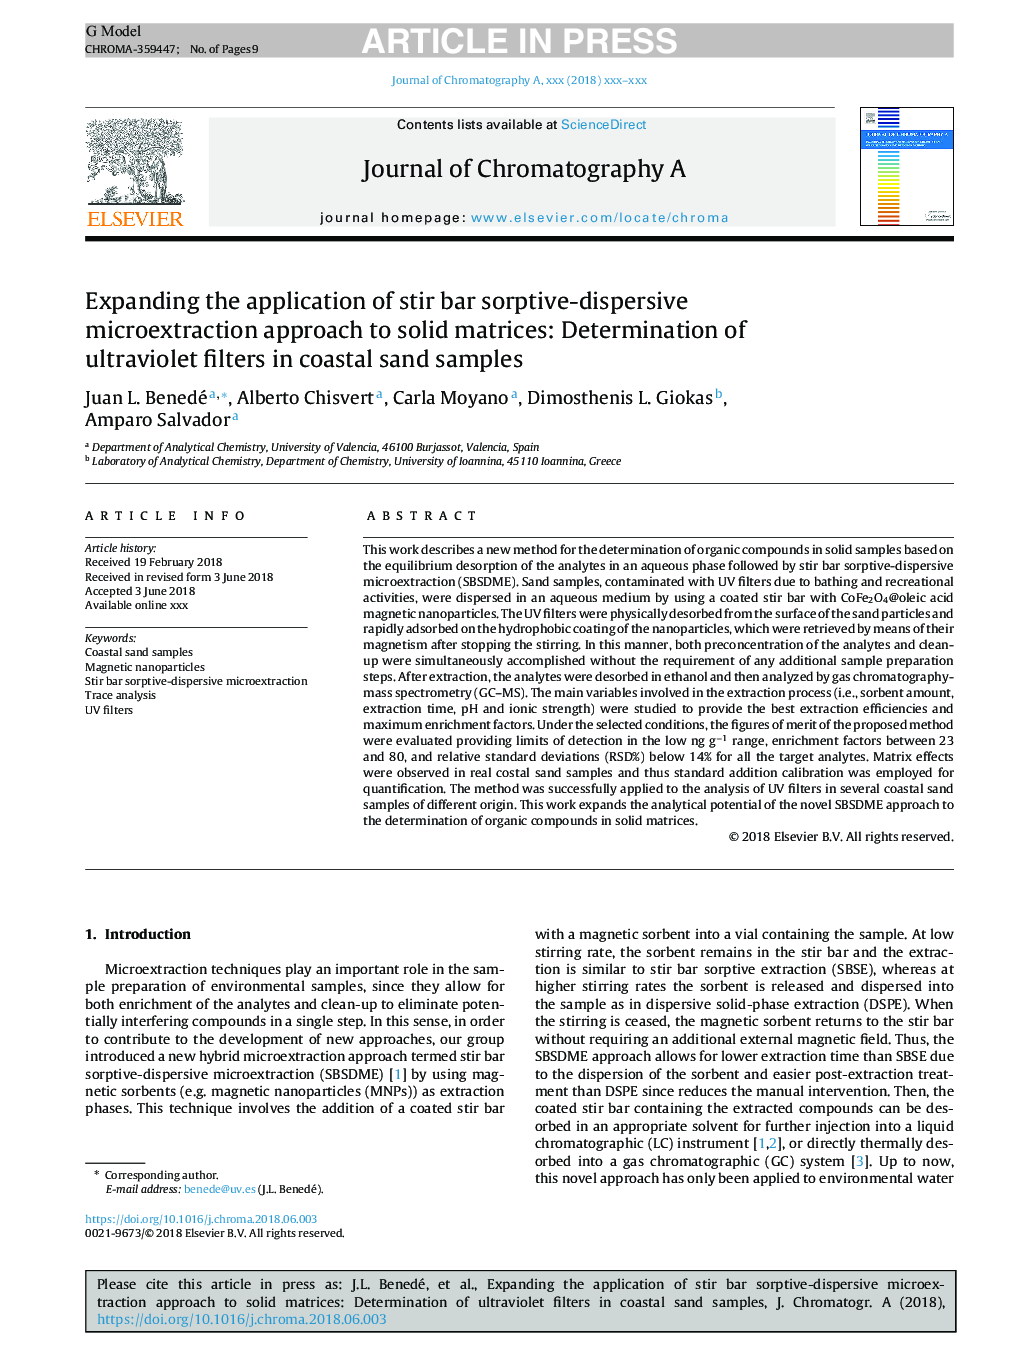 گسترش استفاده از روش برش میکرواکساسیون پراکنده مشتق شده به ماتریس جامد: تعیین فیلترهای ماورای بنفش در نمونه های شن و ماسه ساحلی 